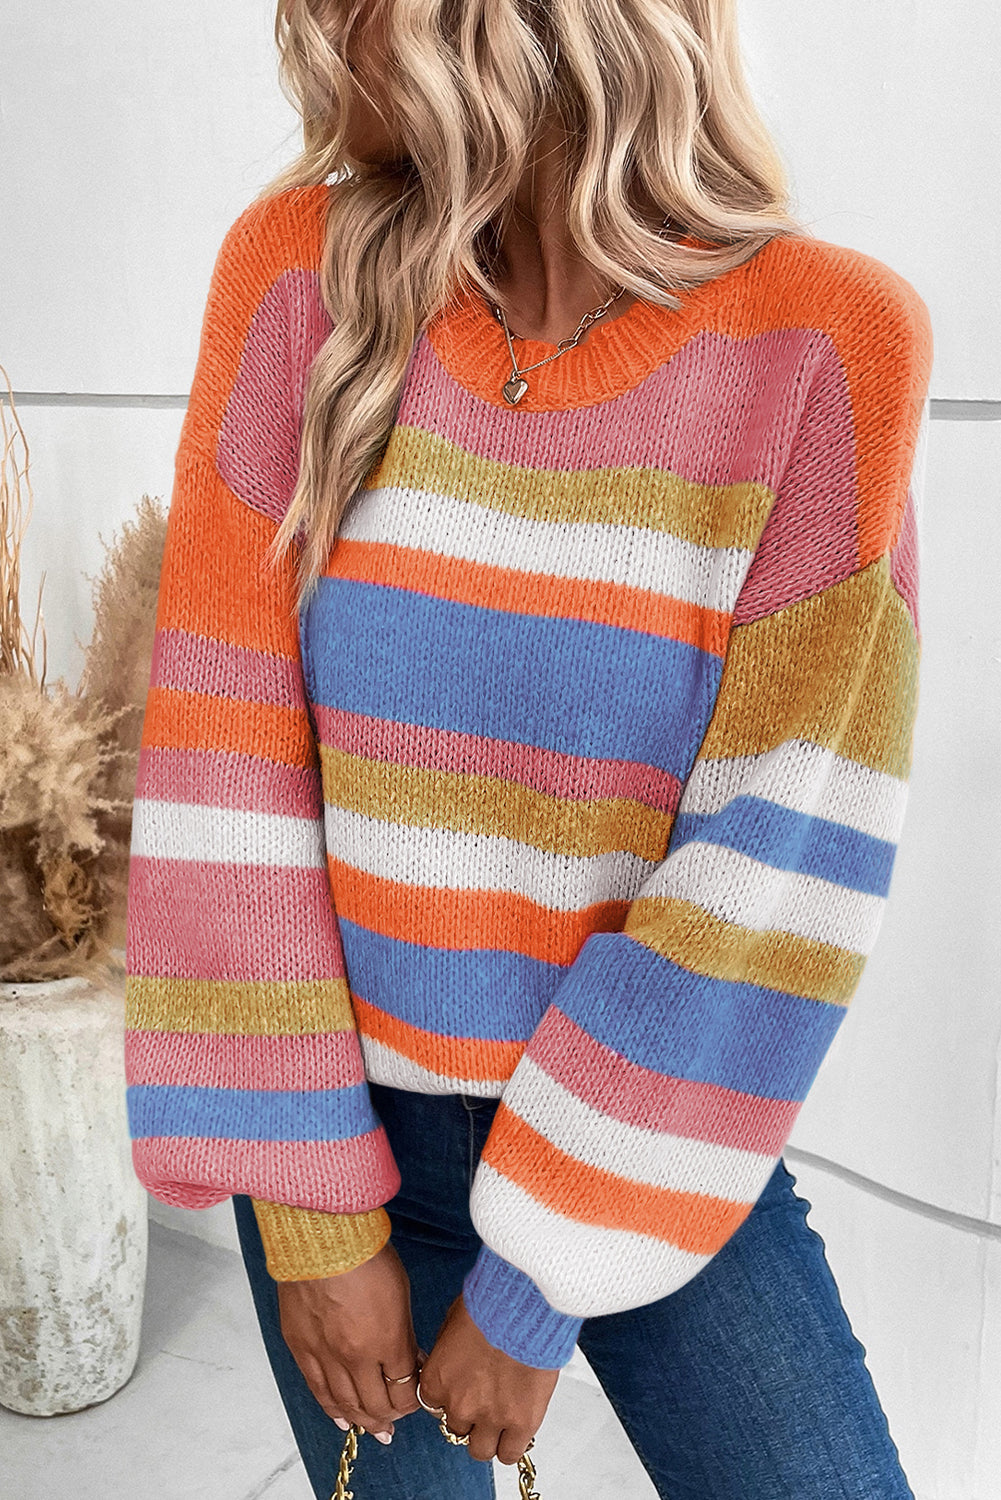 Večbarvni črtasto pleten pulover z napihnjenimi rokavi na spuščena ramena